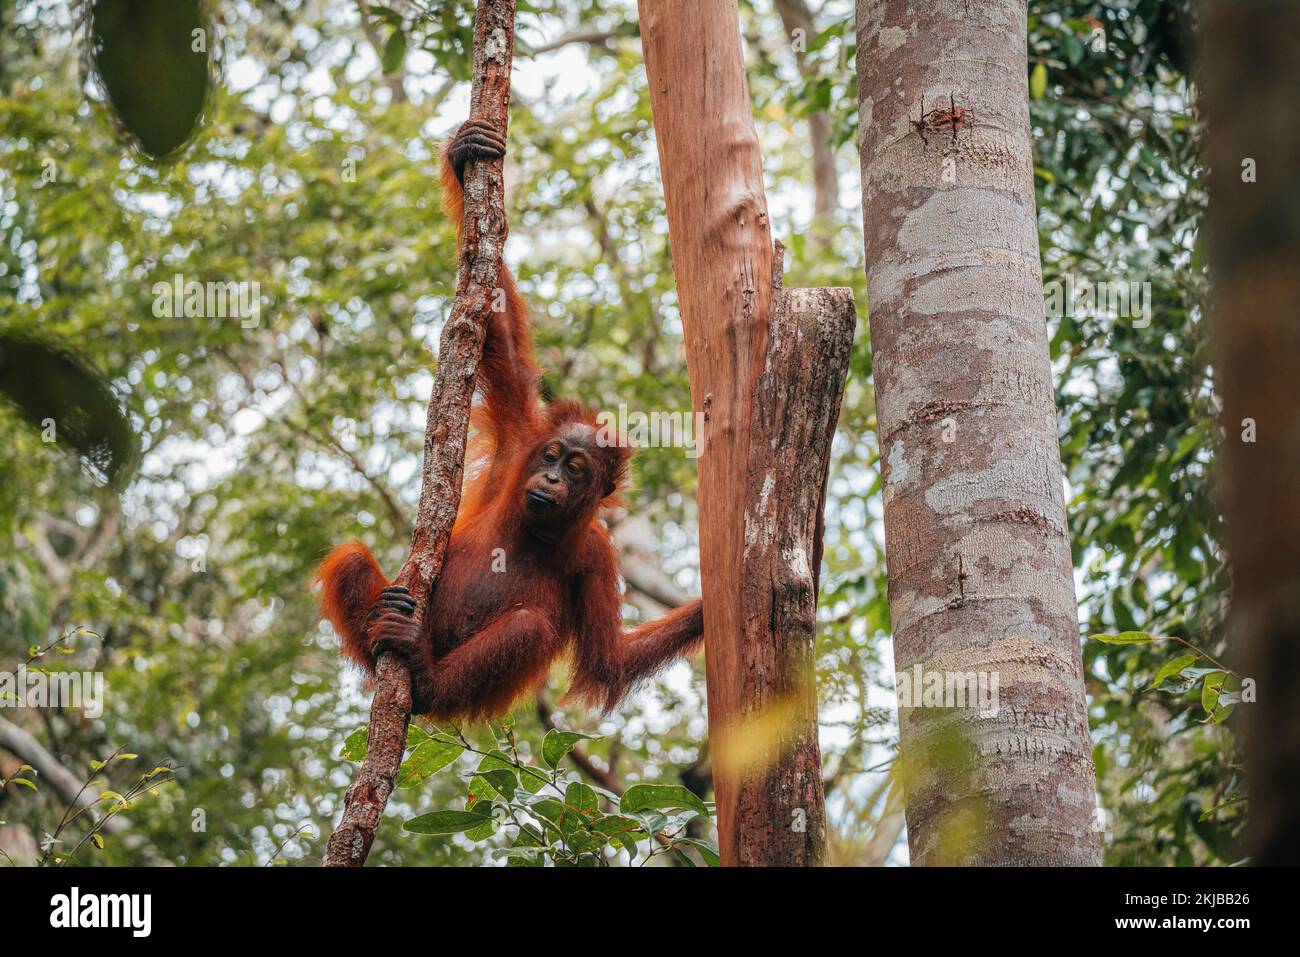 Portrait of young Bornean Orangutan or Pongo pygmaeus Stock Photo